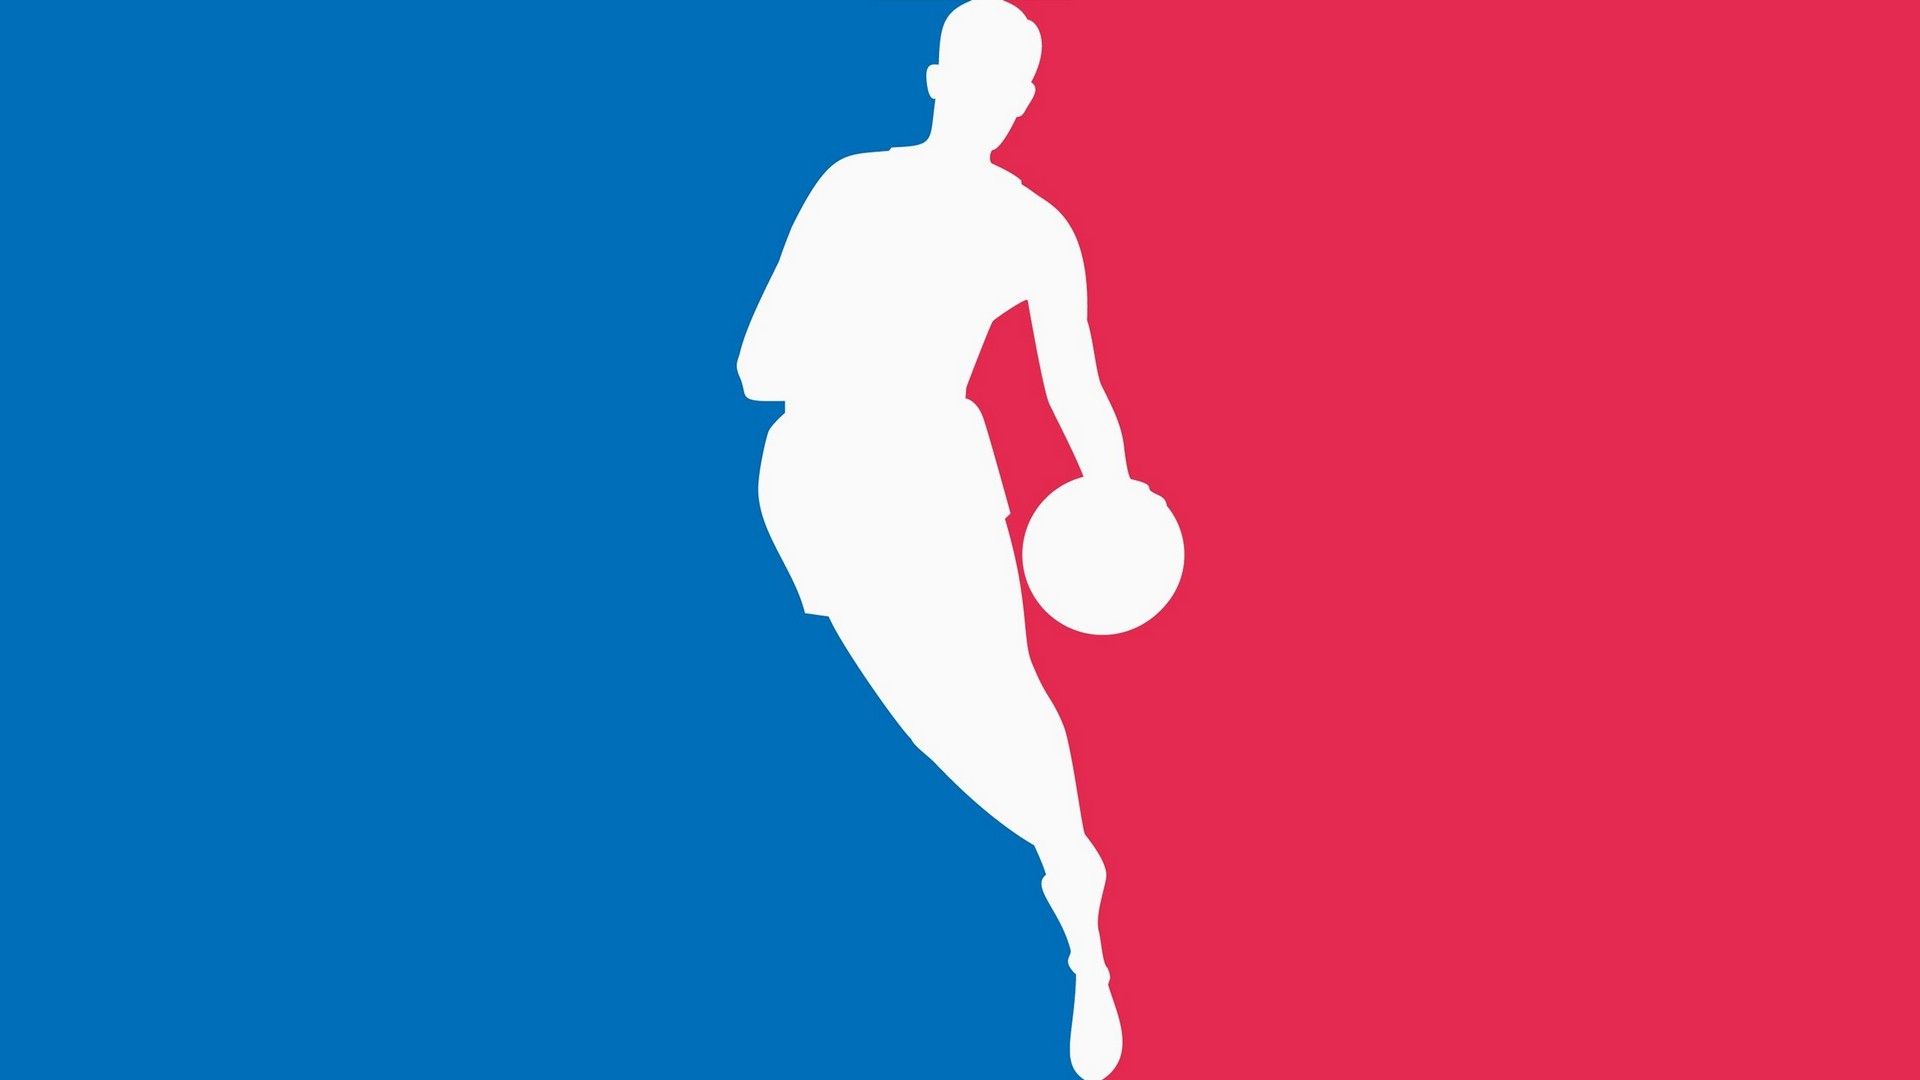 HD Desktop Wallpaper NBA Basketball Wallpaper